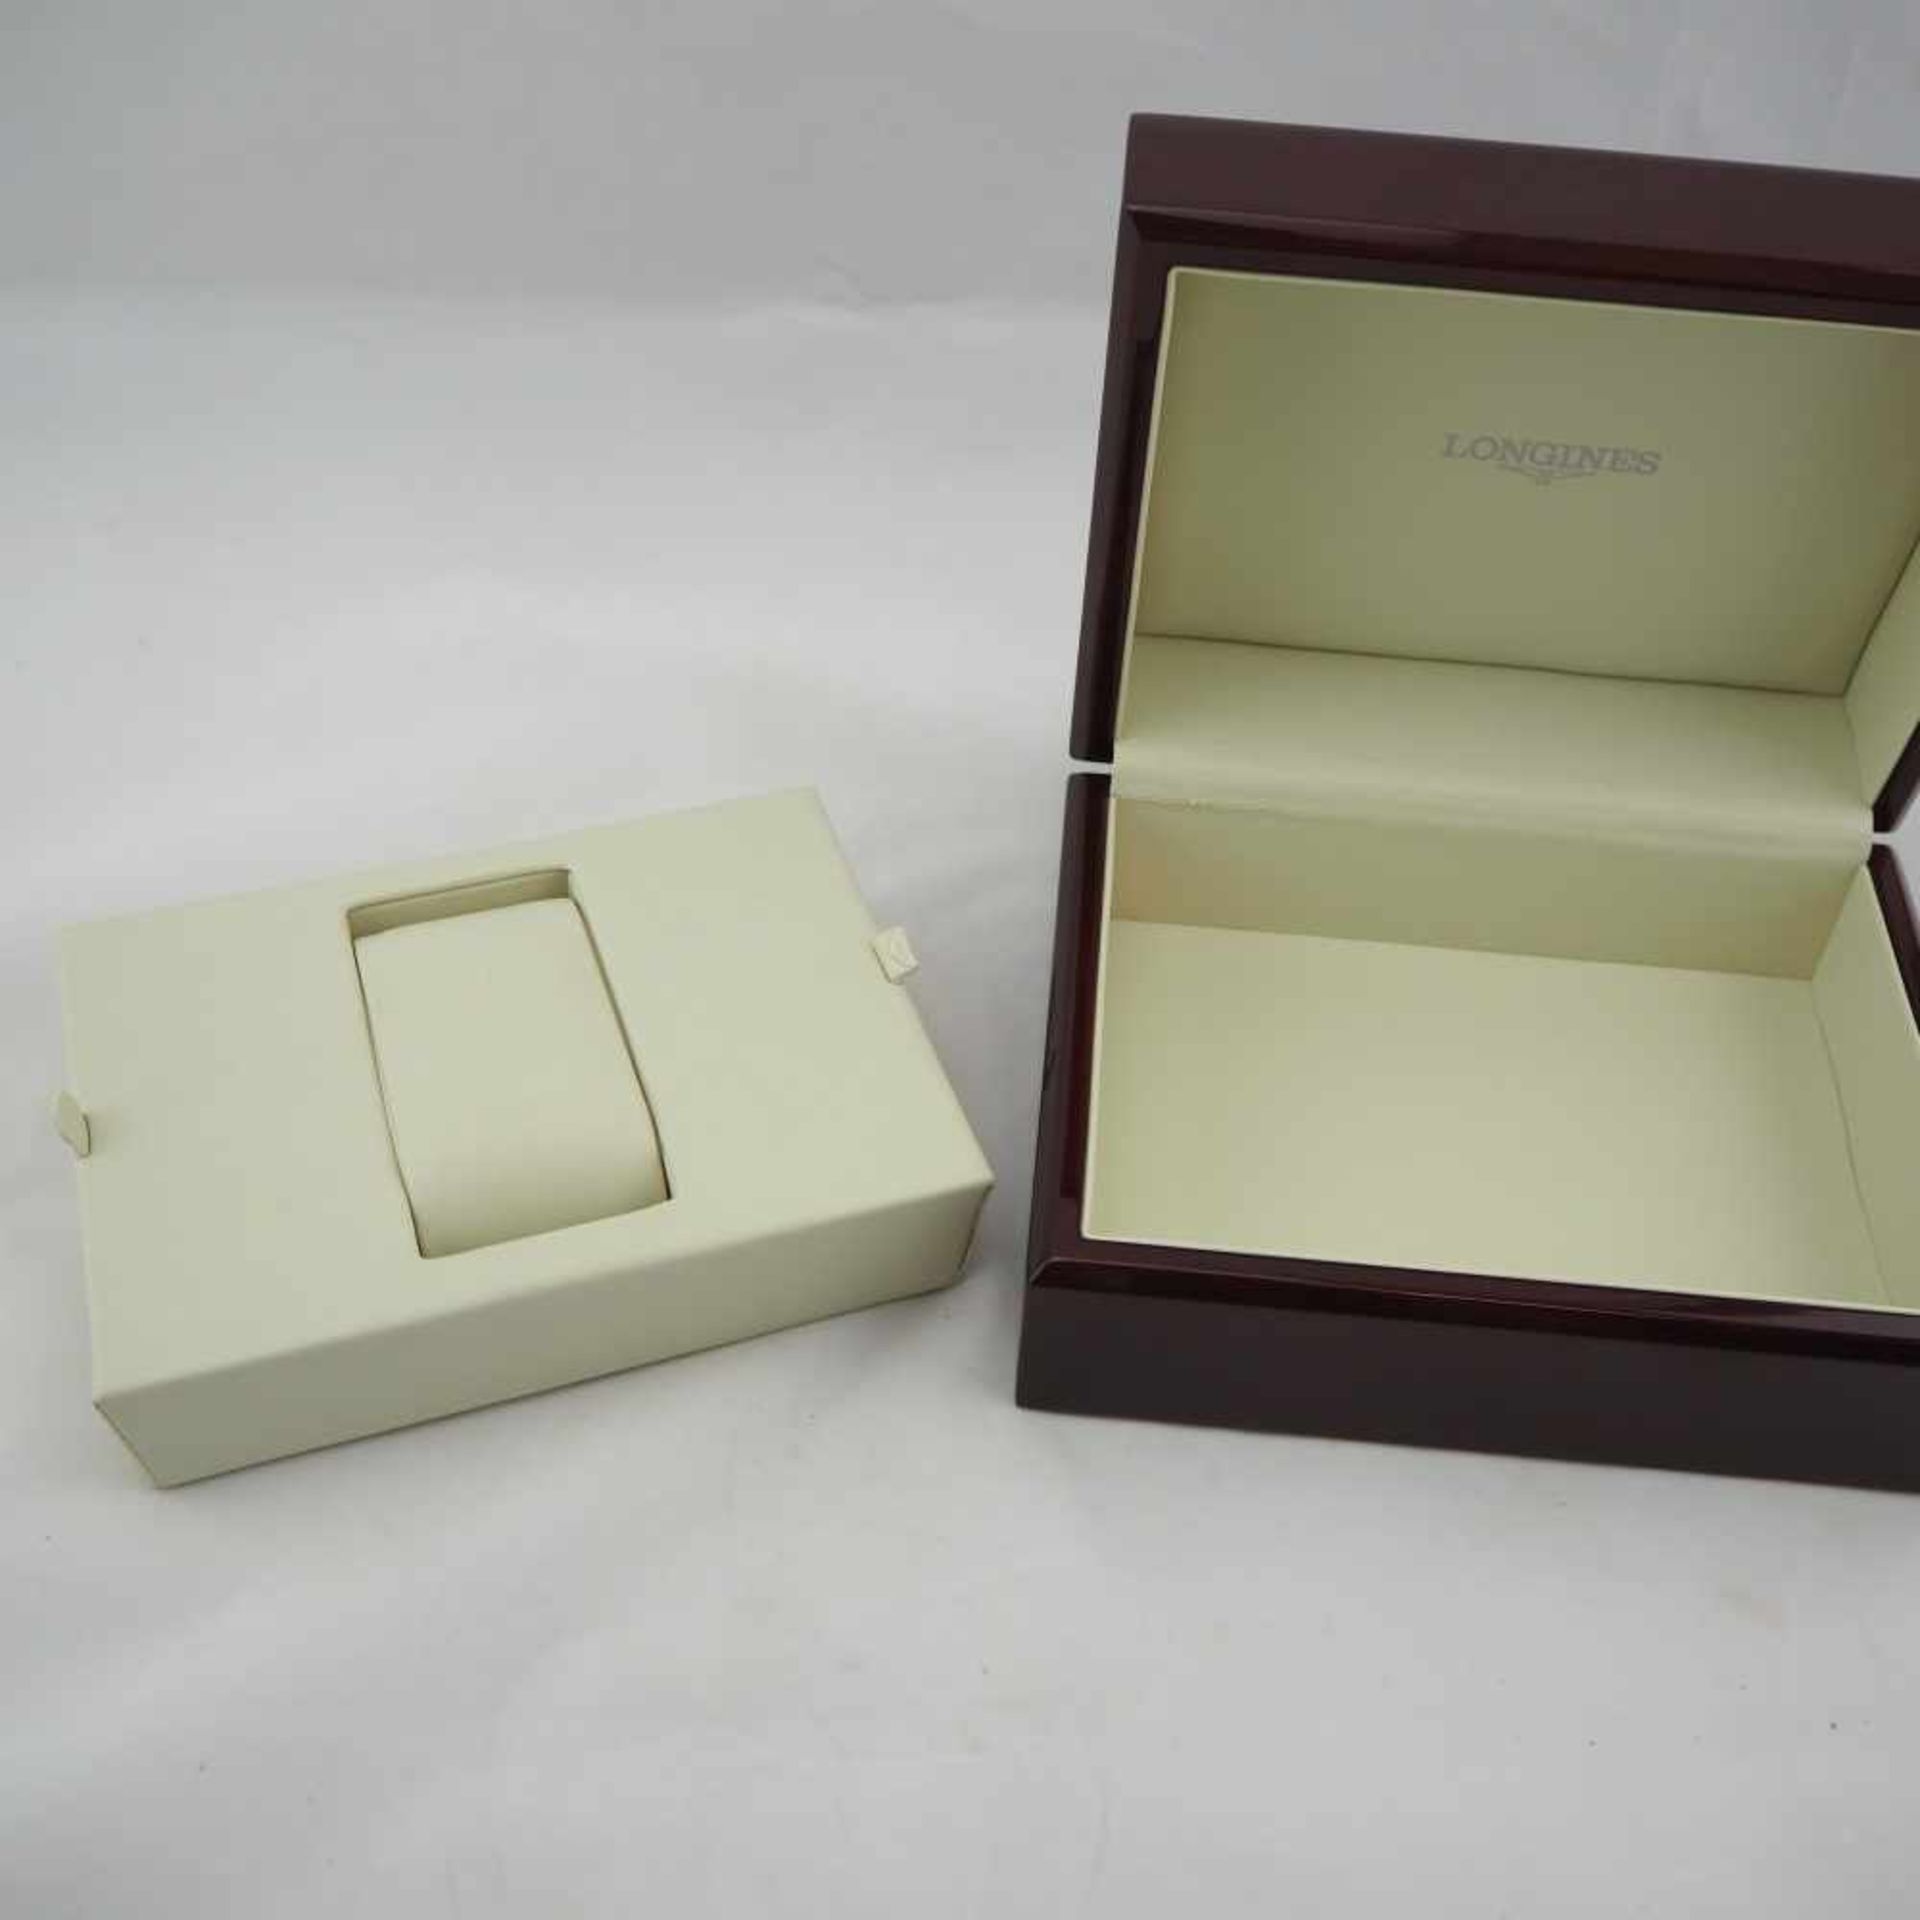 Uhrenbox "Longines", 70er JahreOriginal Box für Longines Herrenarmband-Uhr, in hochwertiger - Bild 3 aus 4